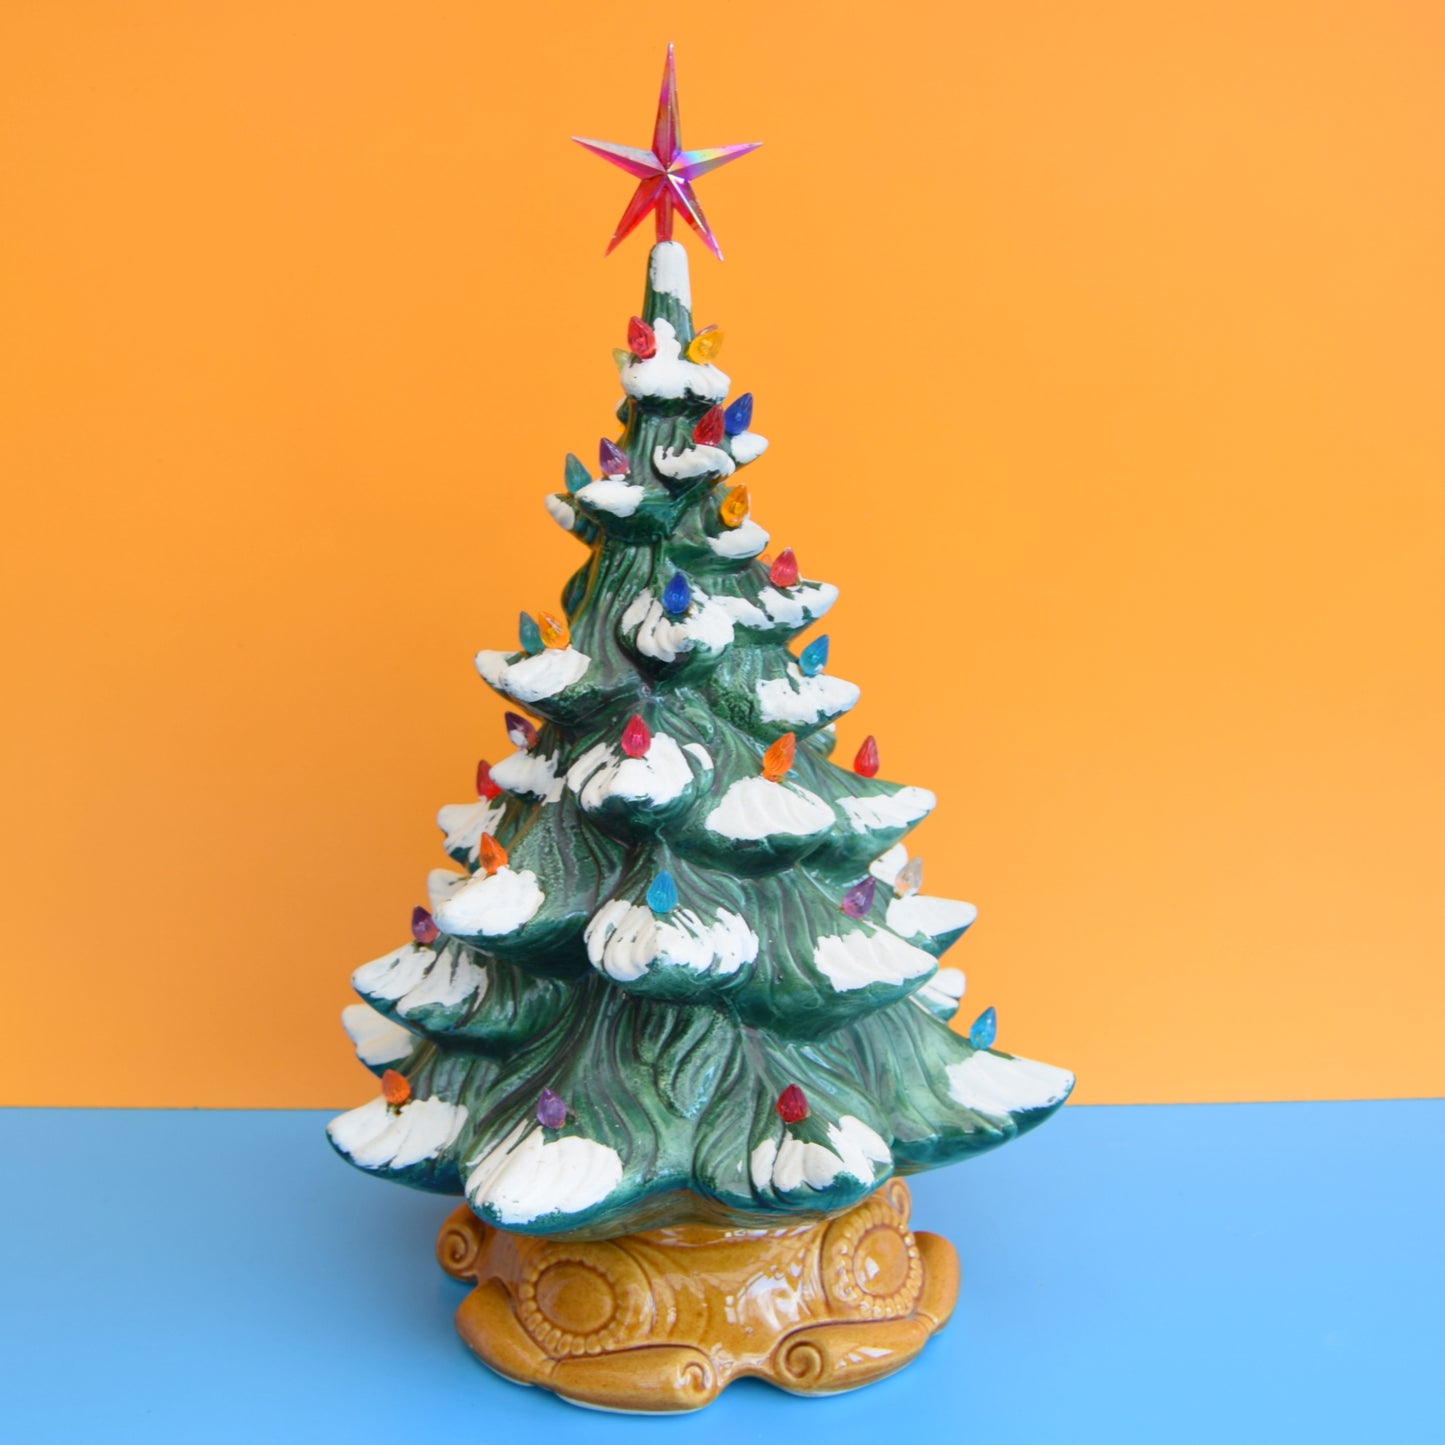 Vintage Ceramic Christmas Tree Lamp - Rainbow Flame Bulbs .